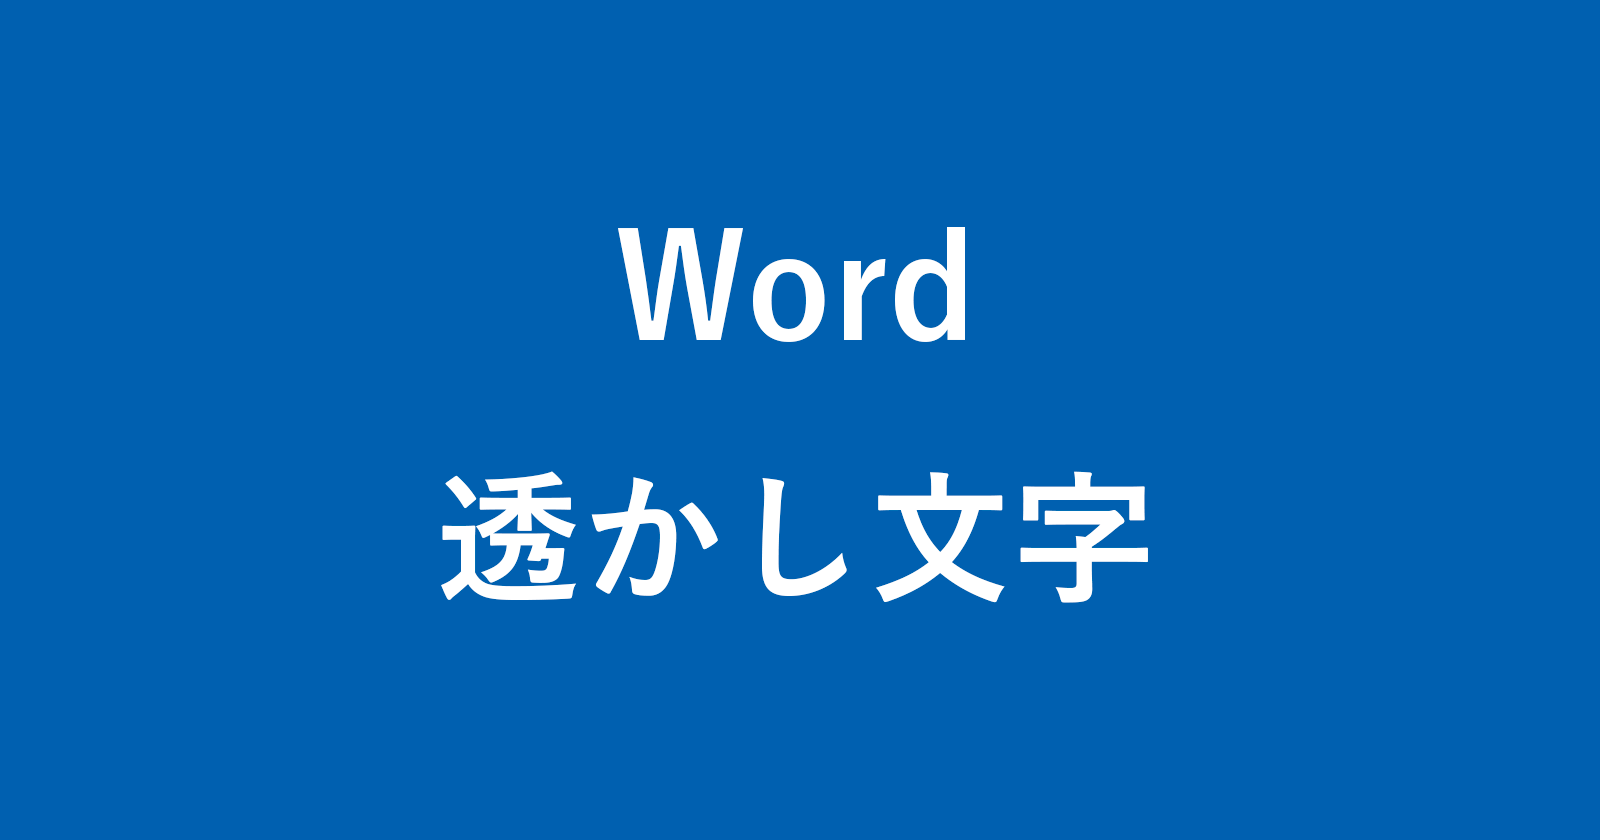 word watermark